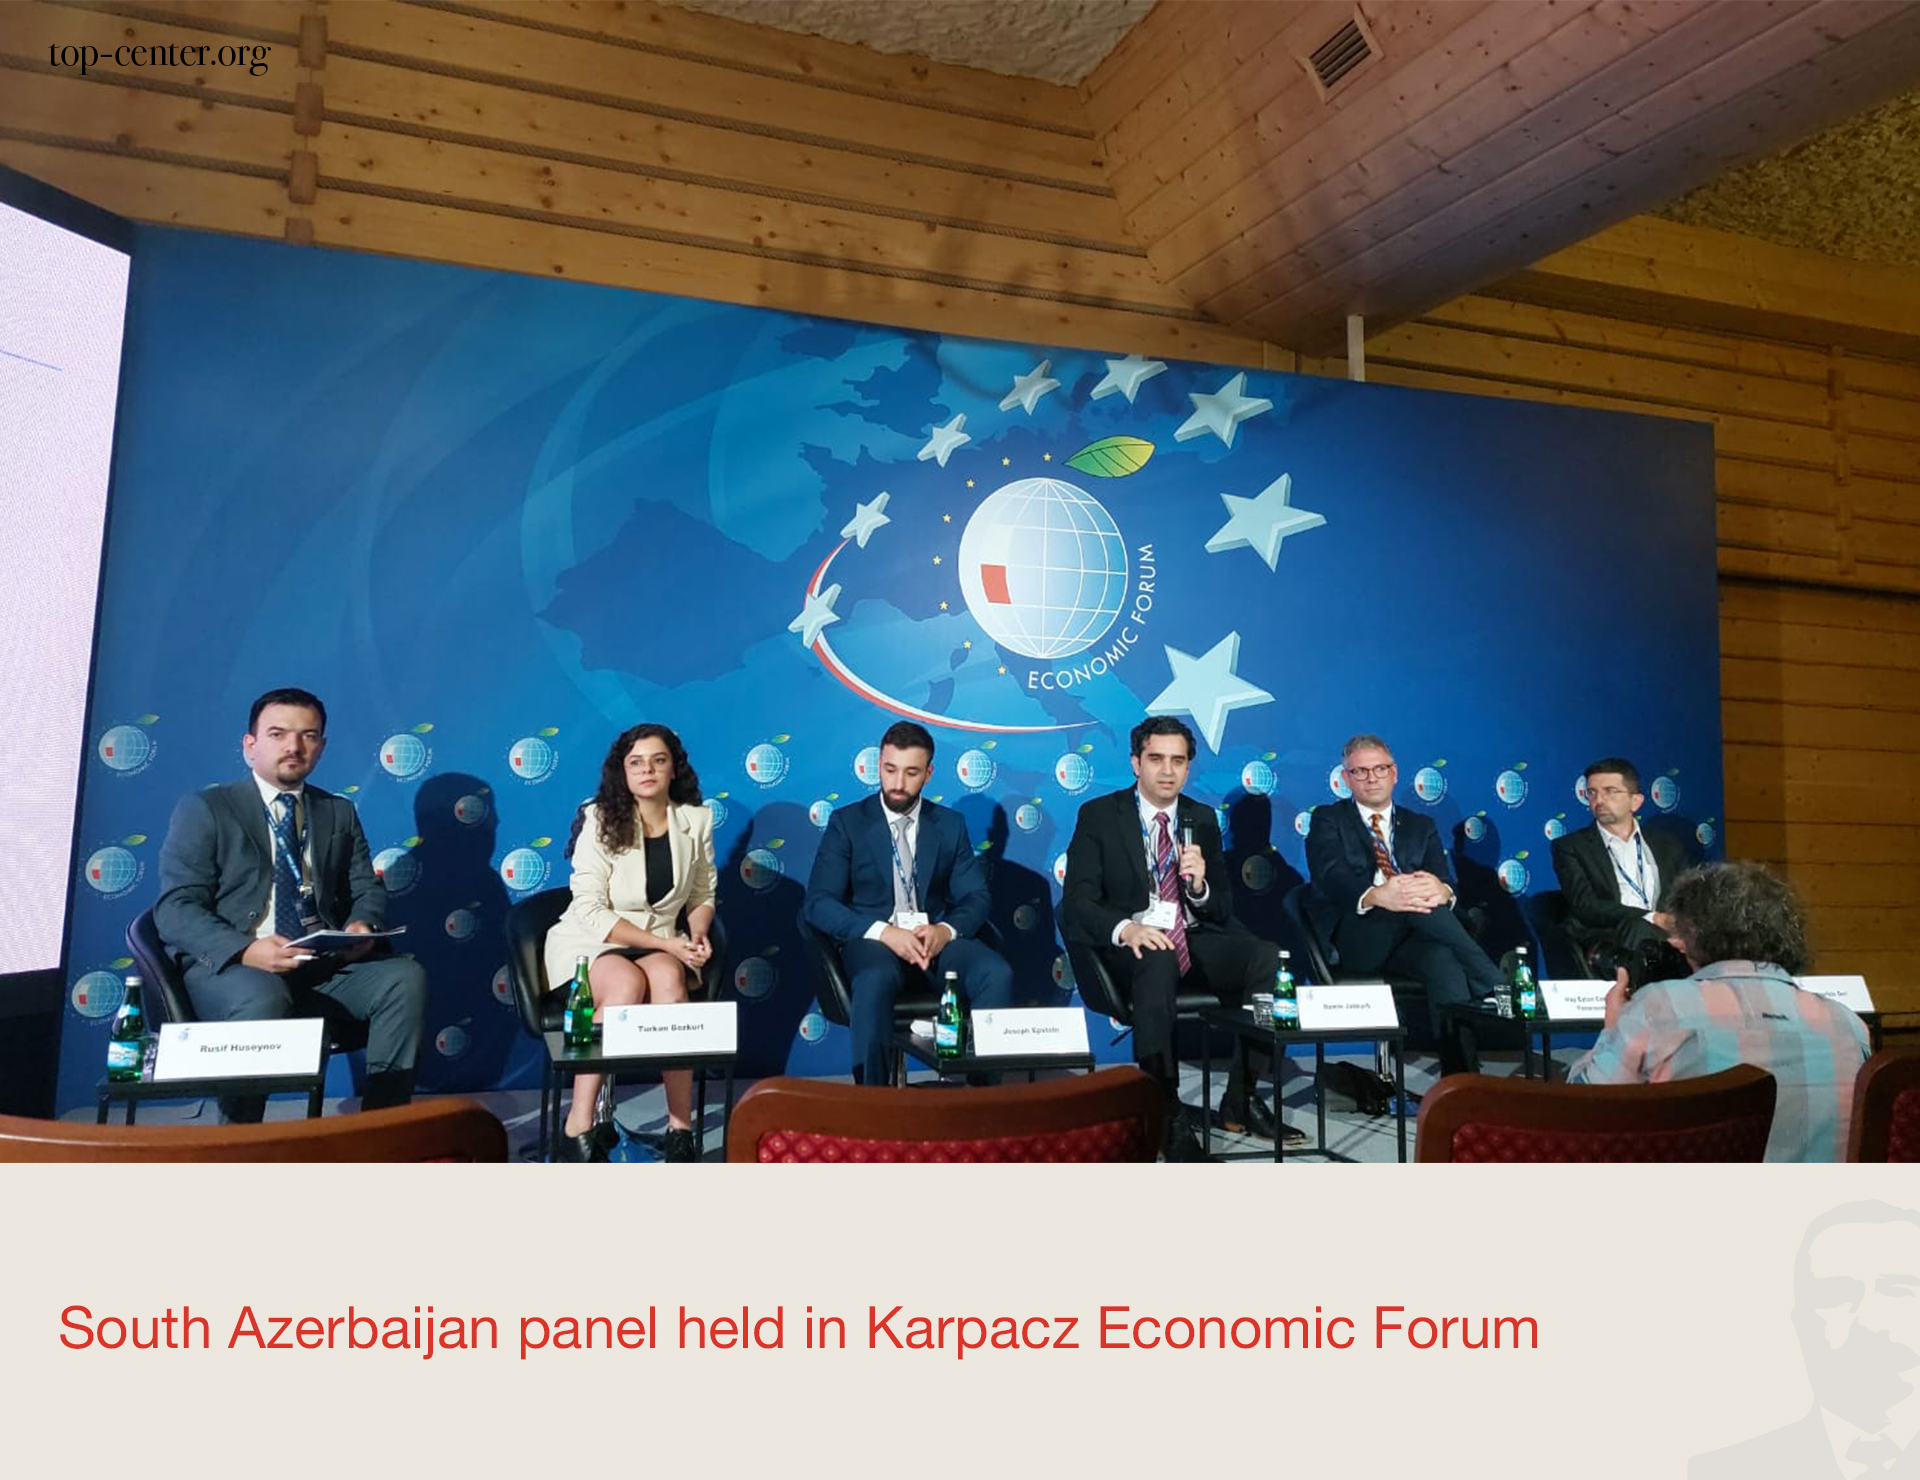 Karpaç İqtisadi Forumunda Güney Azərbaycan paneli keçirilib